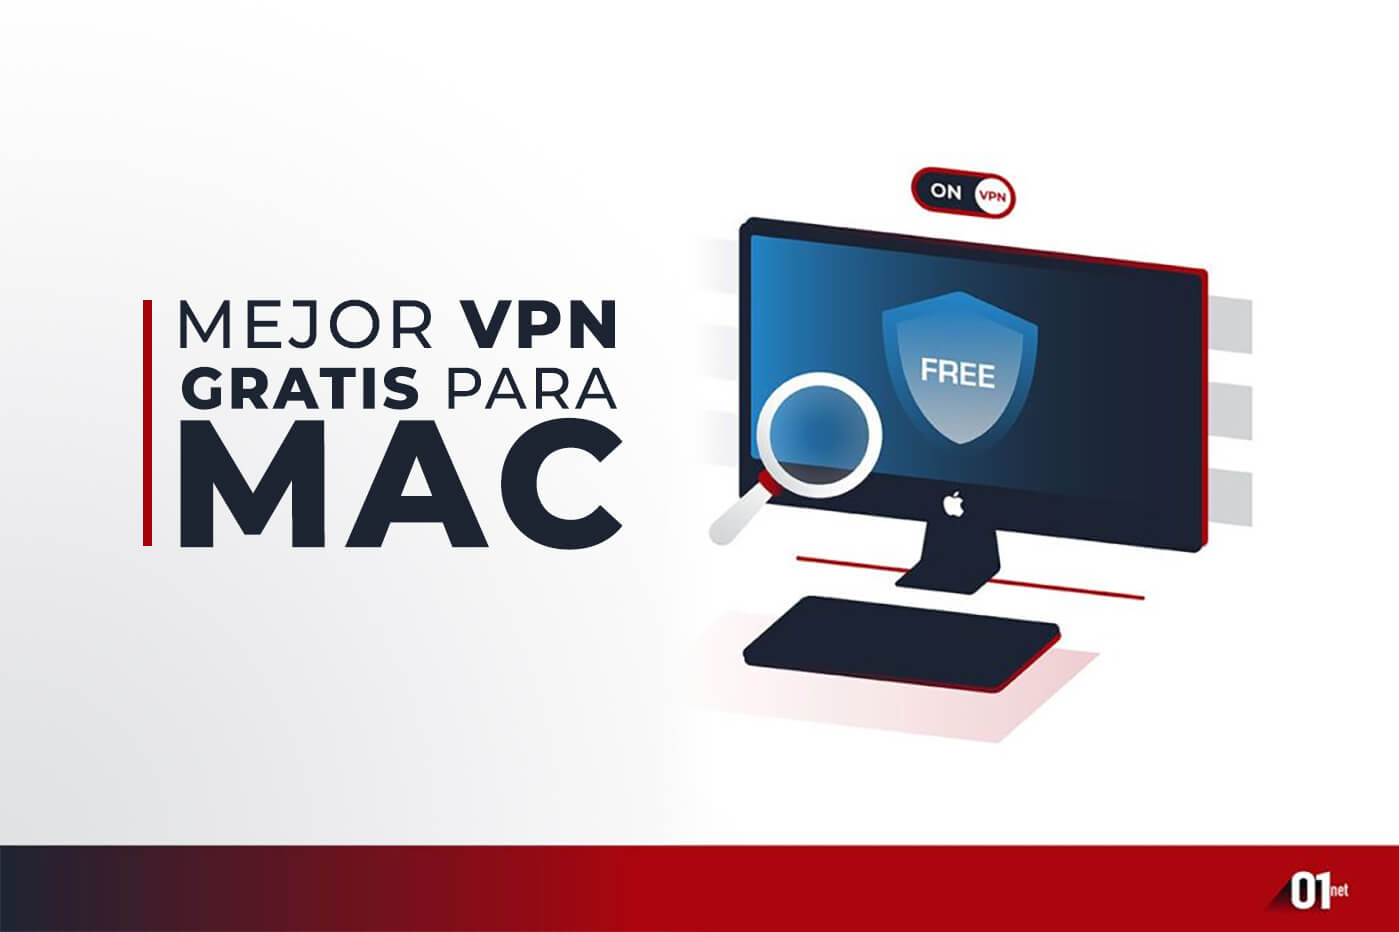 Las 5 Mejores VPN para Mac que Tienen Servidores VPN 100% Gratis